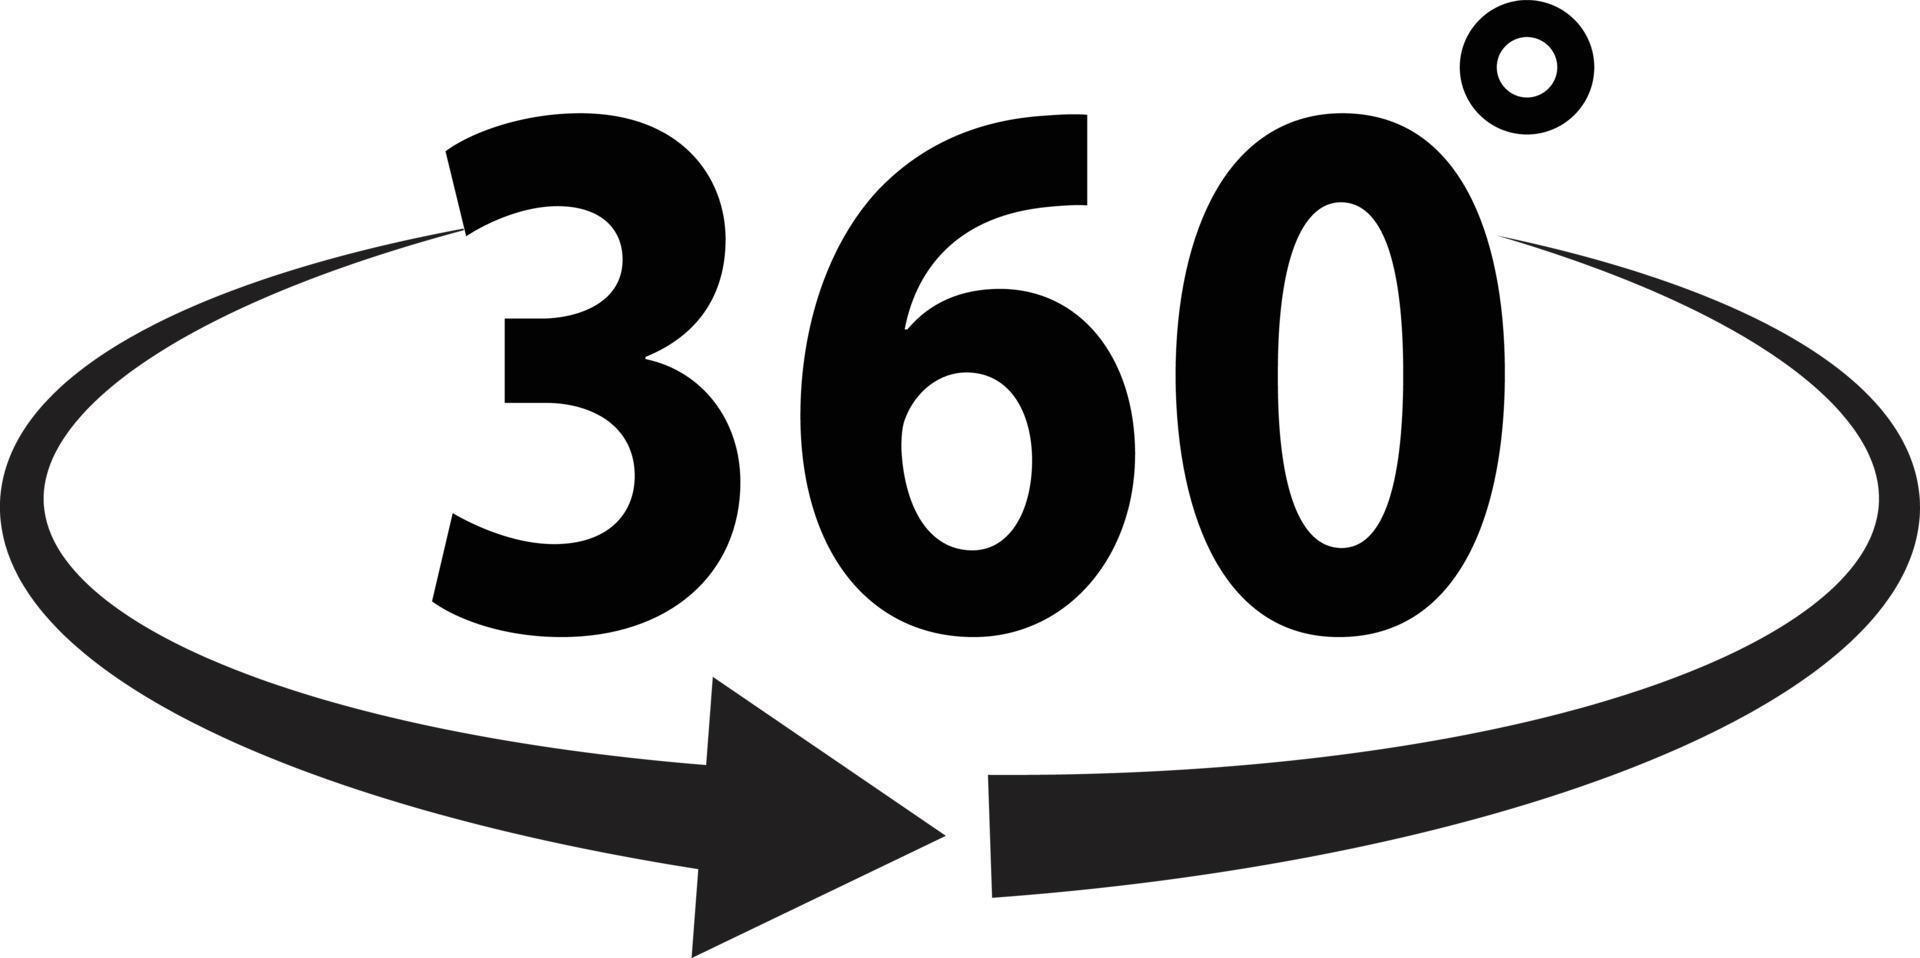 icône d'angle 360 degrés sur fond blanc. style plat. icône d'angle 360 degrés pour la conception, le logo, l'application, l'interface utilisateur de votre site Web. signe 360. vecteur